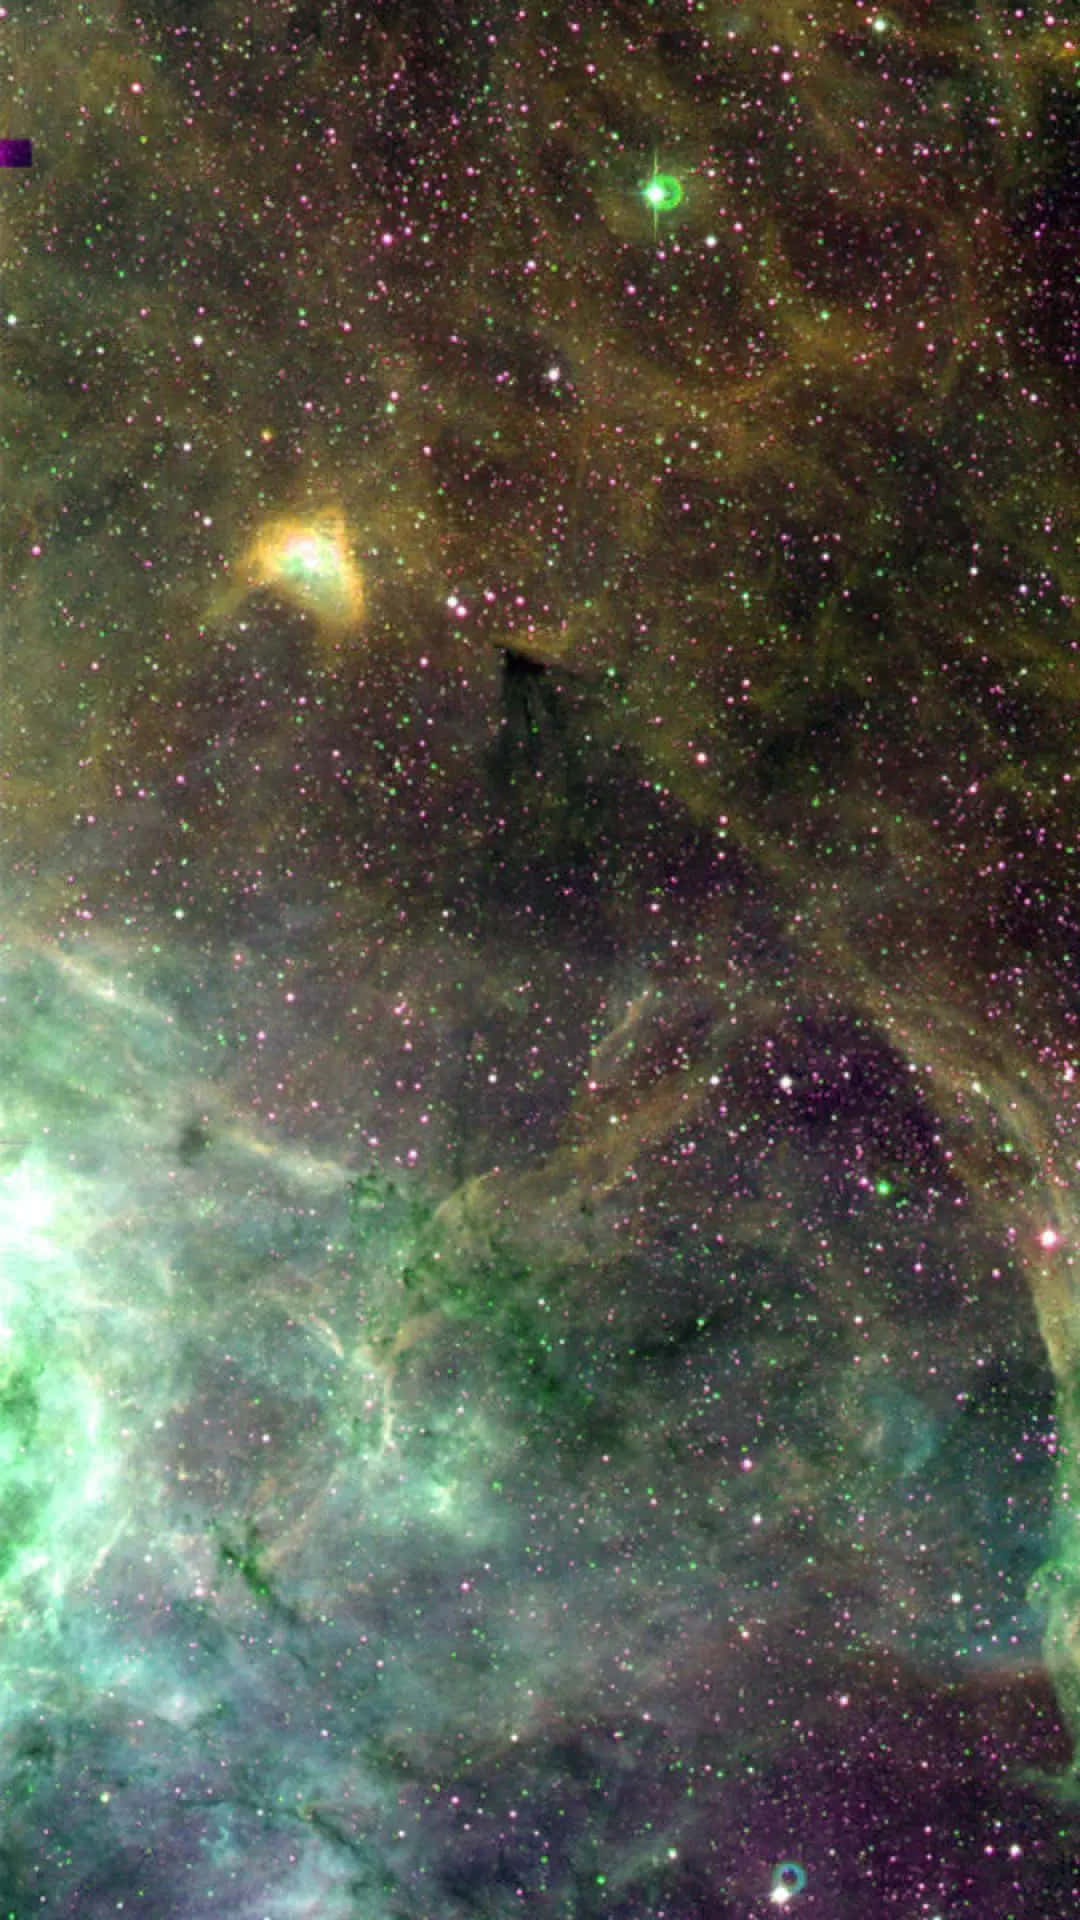 Fantastiskudsigt Til En Grøn Galakse På Nattehimlen. Wallpaper